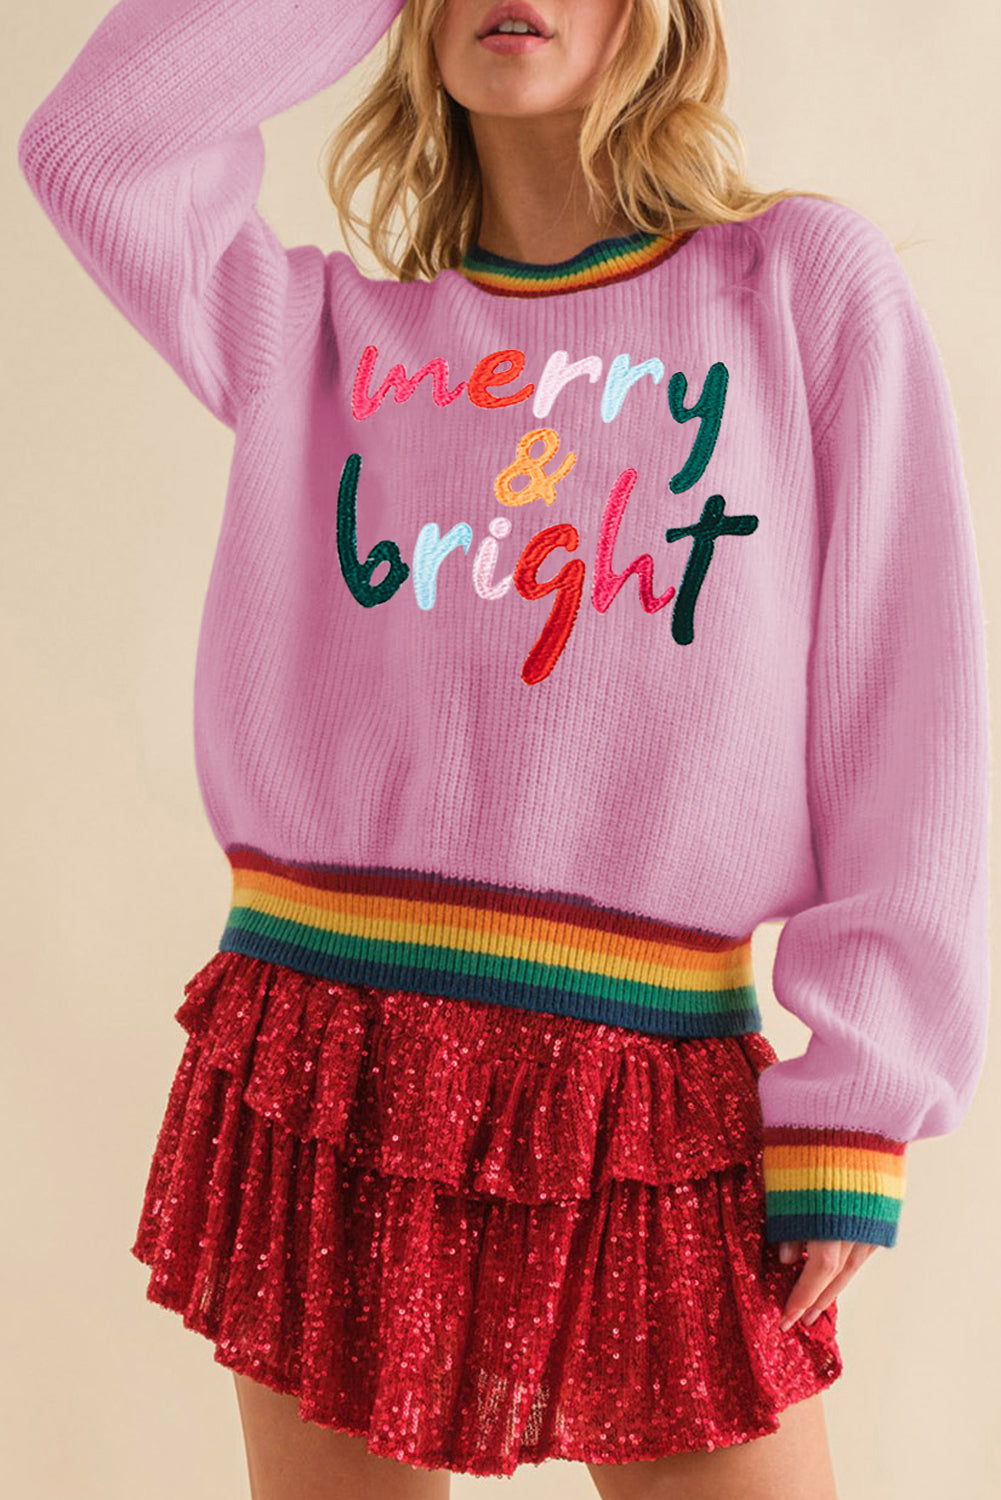 Maglione con finiture a strisce colorate allegro e luminoso Bonbon